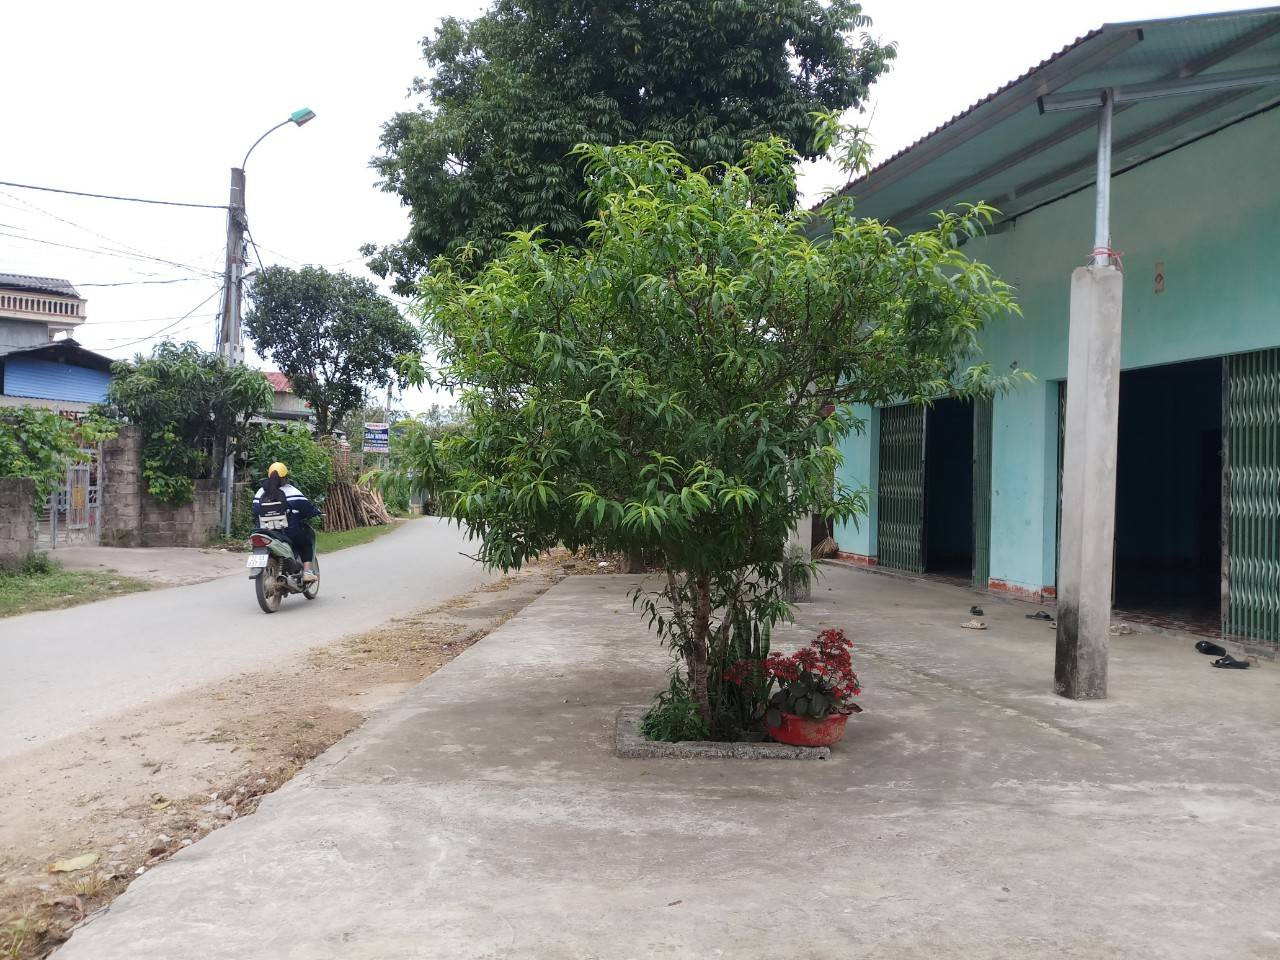 Bán nhà ngõ 6 đường Thanh Niên, trung tâm thị trấn Sơn Dương, Tuyên Quang. Kinh doanh được. Giá 25 tr/m2